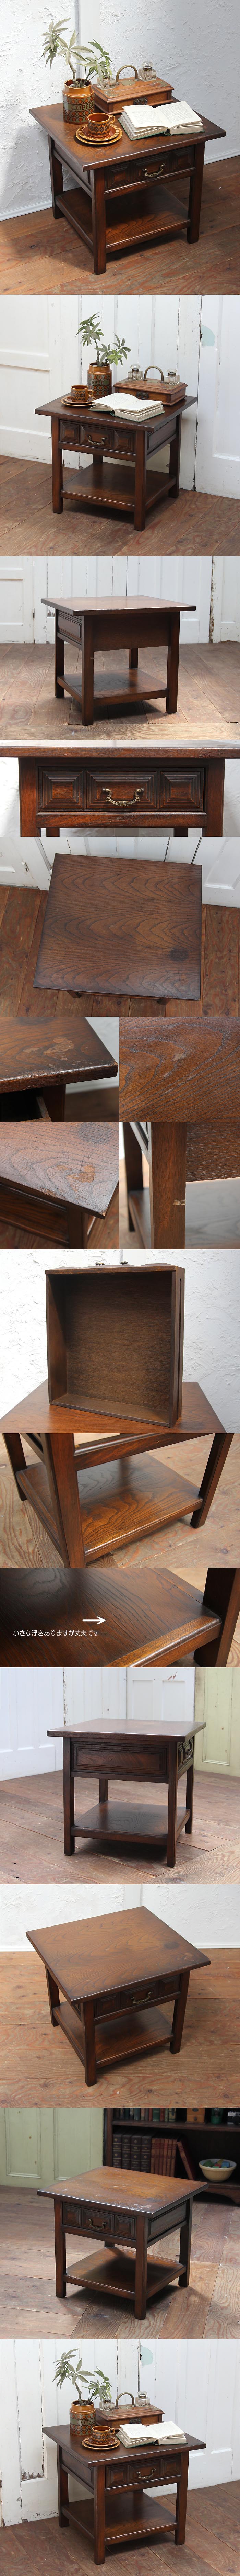 イギリス アンティーク調 引き出し付きローテーブル 木製 コーヒーテーブル 家具「ドロワー付」P-306